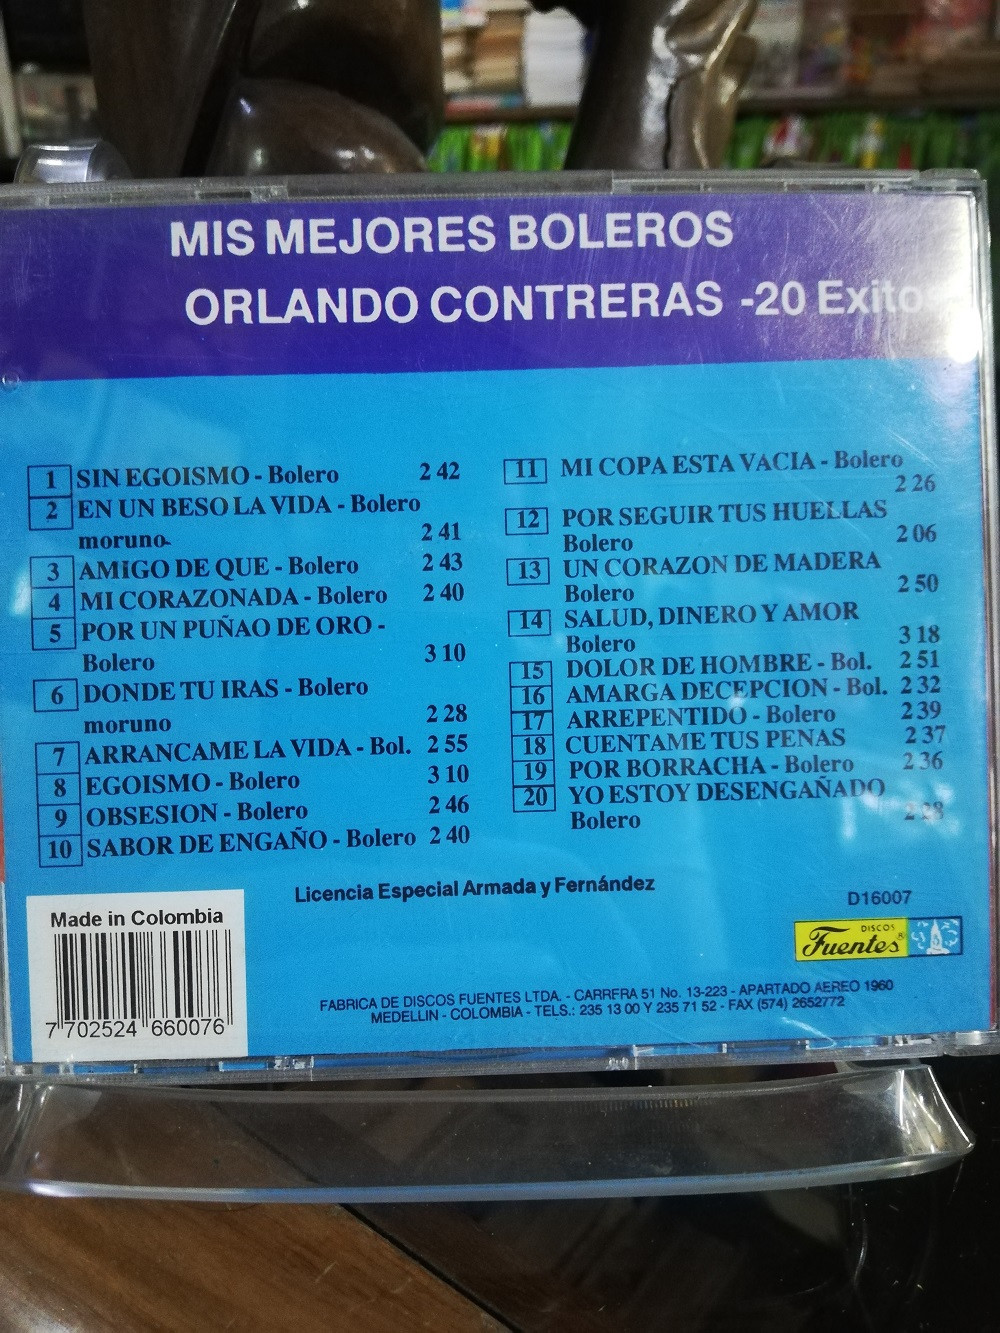 Imagen CD ORLANDO CONTRERAS - ESTE ES ORLANDON CONTRERAS 2